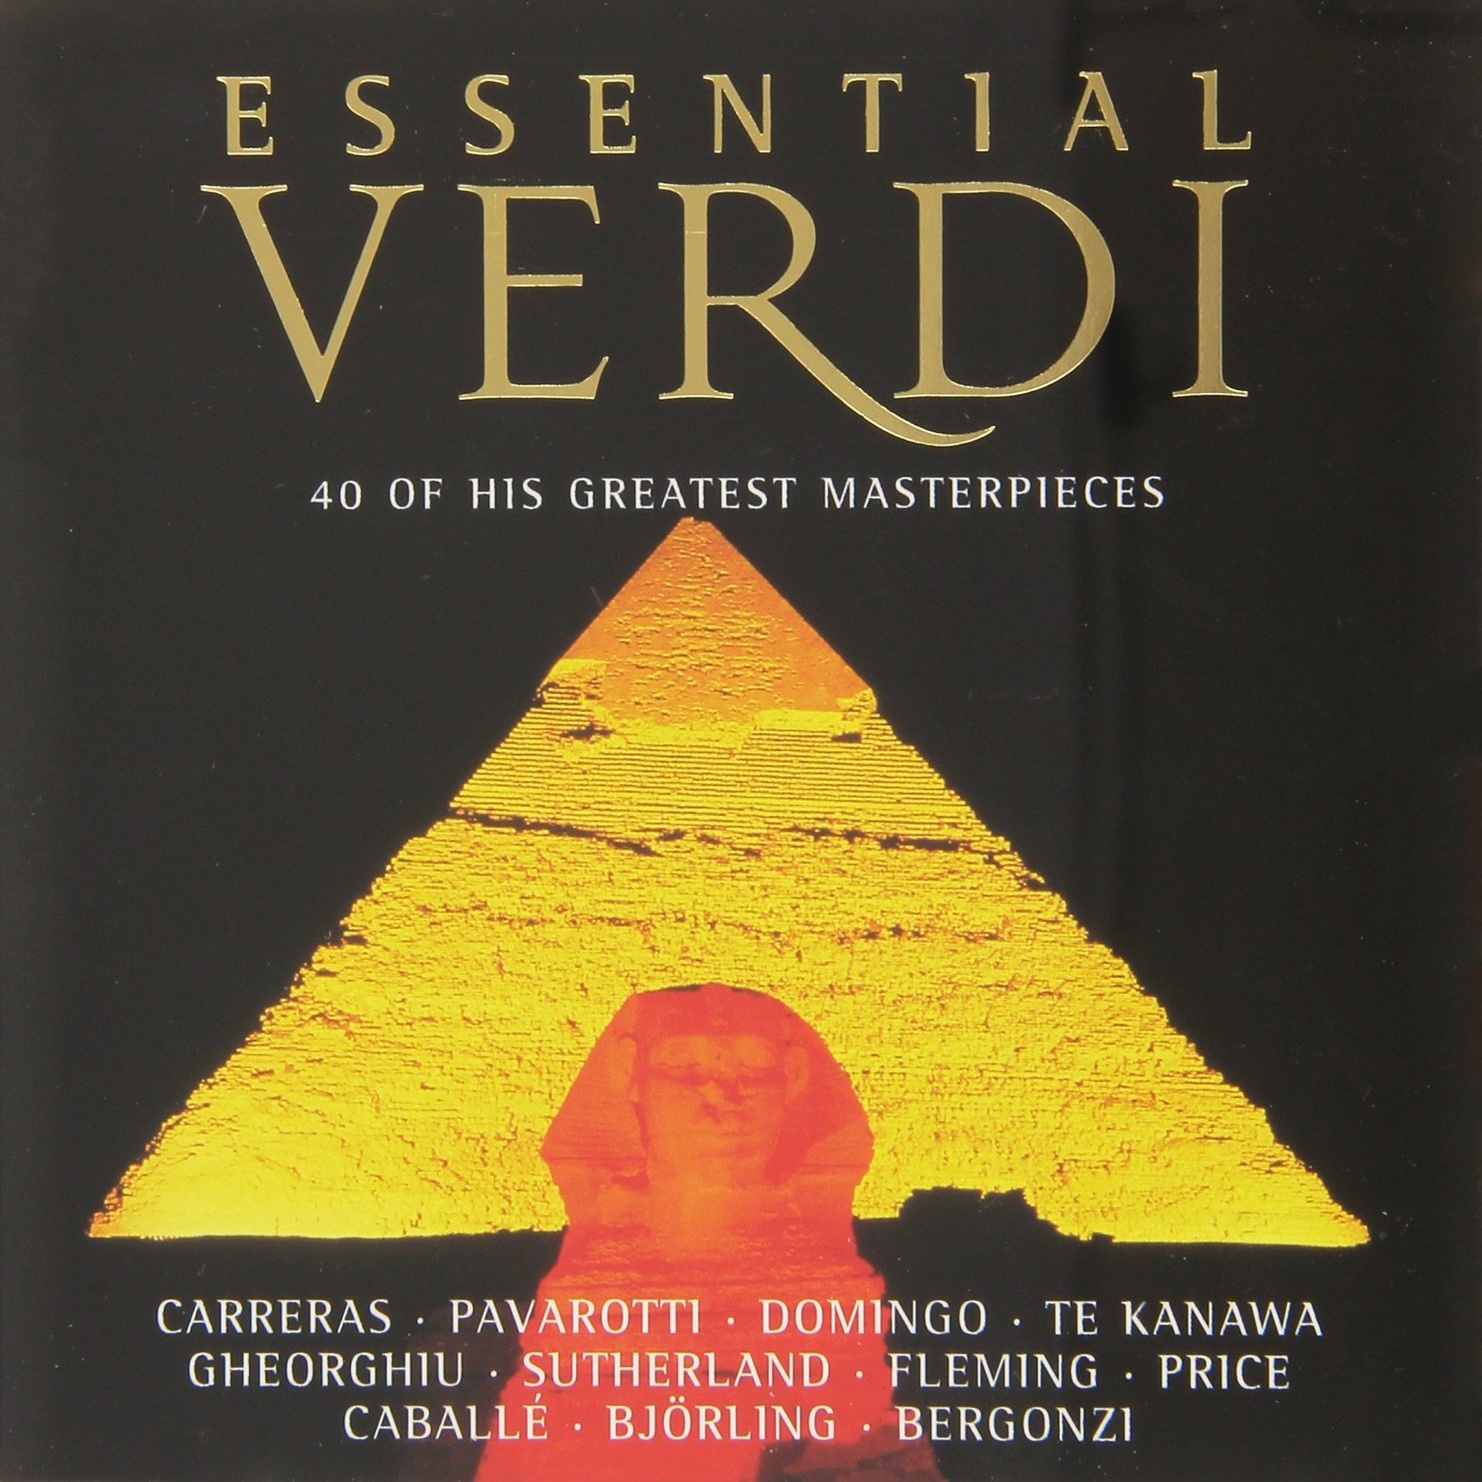 Verdi: I Masnadieri / Act 1 - "Lo sguardo avea degli angeli"